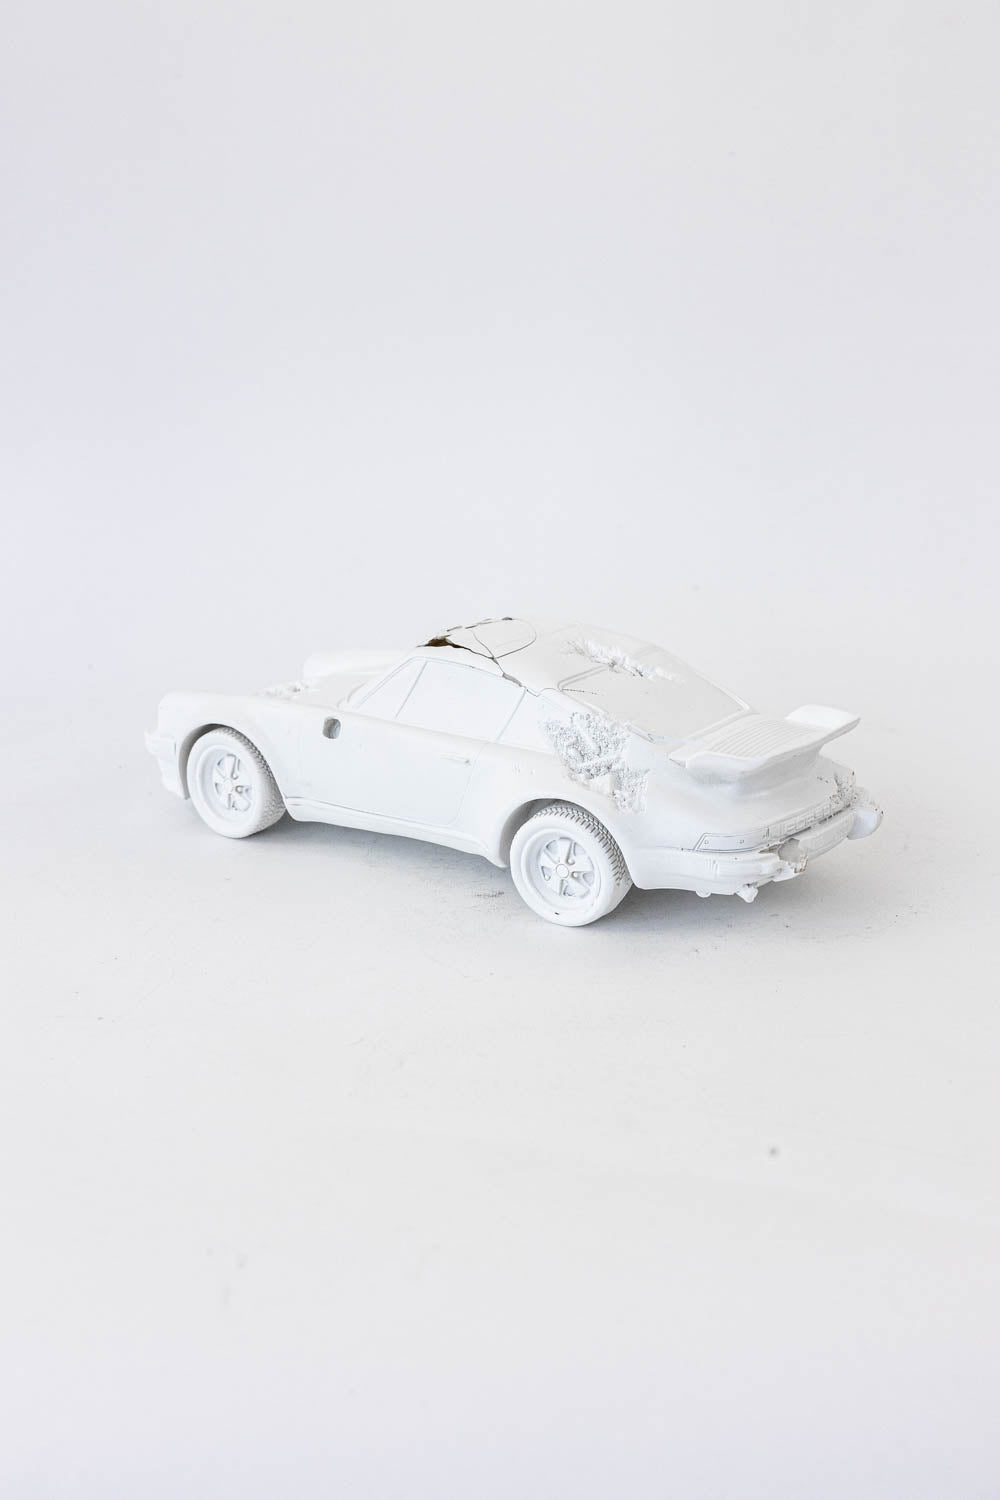 Daniel Arsham Eroded 911 Turbo Figure (Edition of 500) White "Damage - No Box"